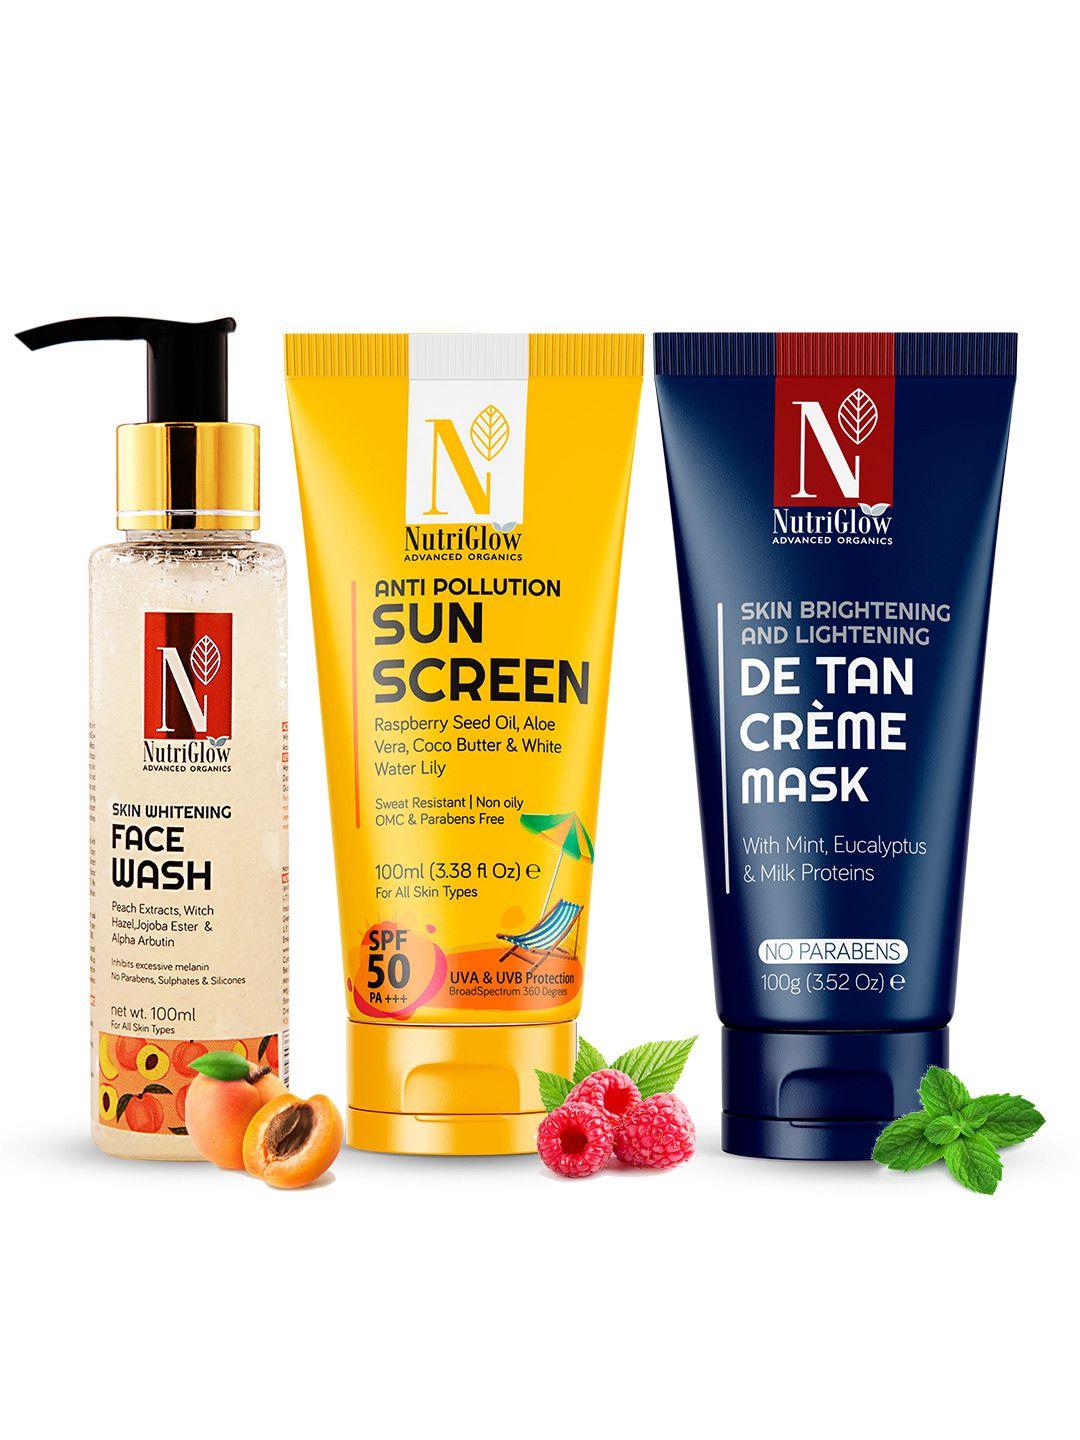 nutriglow advanced organics combo of 3 sunscreen + de tan mask + whitening face wash